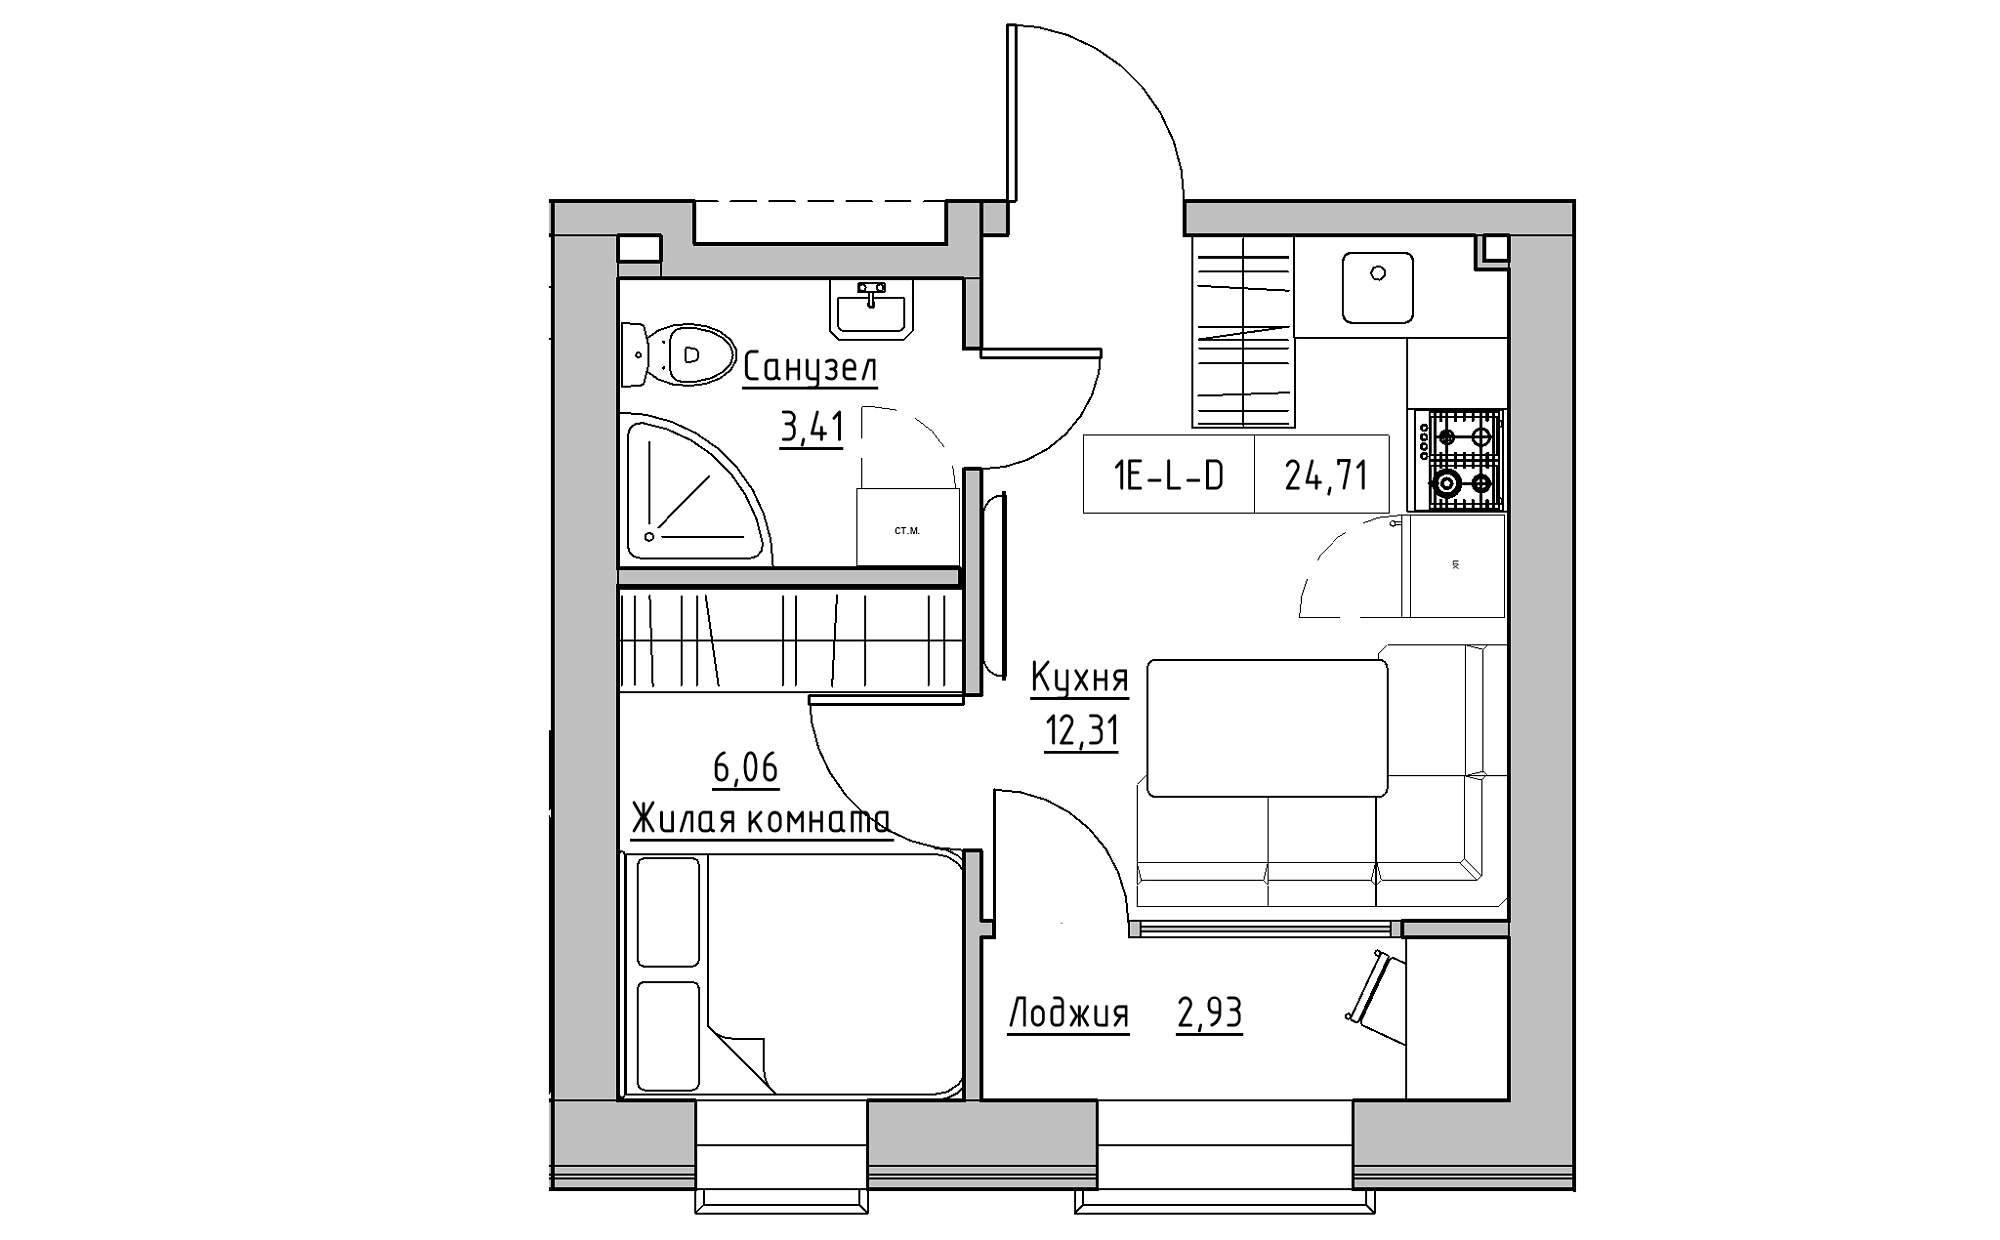 Планировка 1-к квартира площей 24.71м2, KS-022-03/0002.